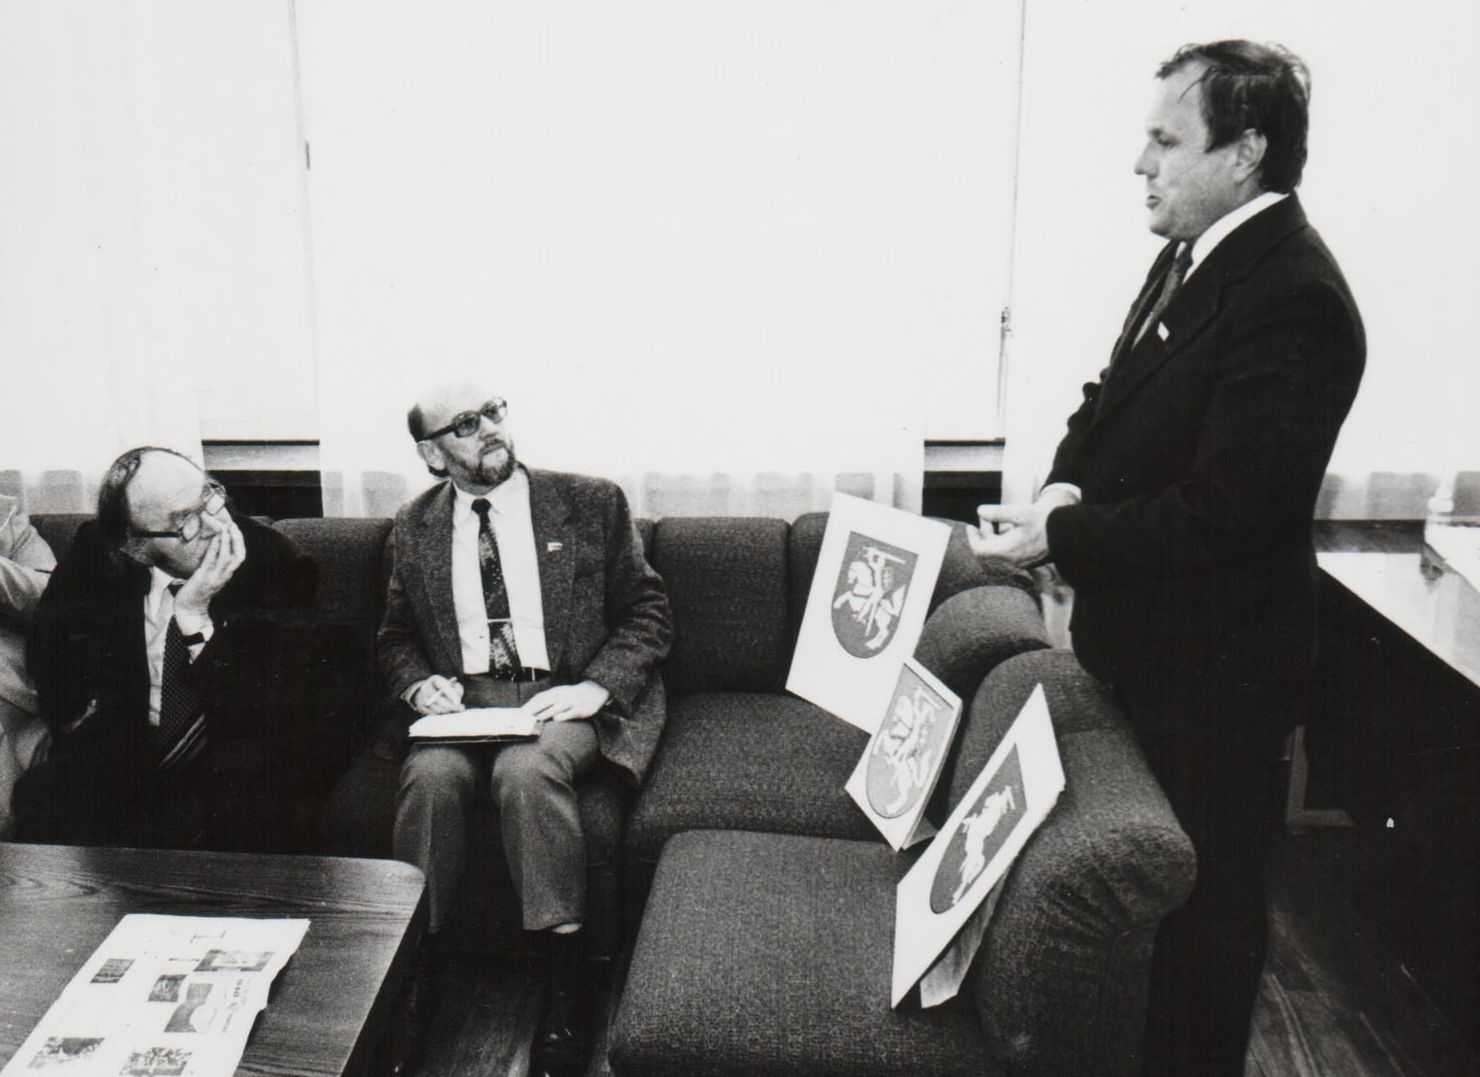 1990 m. kovo 20 d. G. Ilgūnas buvo išrinktas Aukščiausiosios Tarybos Švietimo, mokslo ir kultūros komisijos pirmininku. Pirmasis komisijos darbas – valstybės herbo projekto svarstymas. Kairėje – prof. Julius Juzeliūnas, dešinėje – Aukščiausiosios Tarybos deputatas Povilas Varanauskas. 1990 m. kovas.